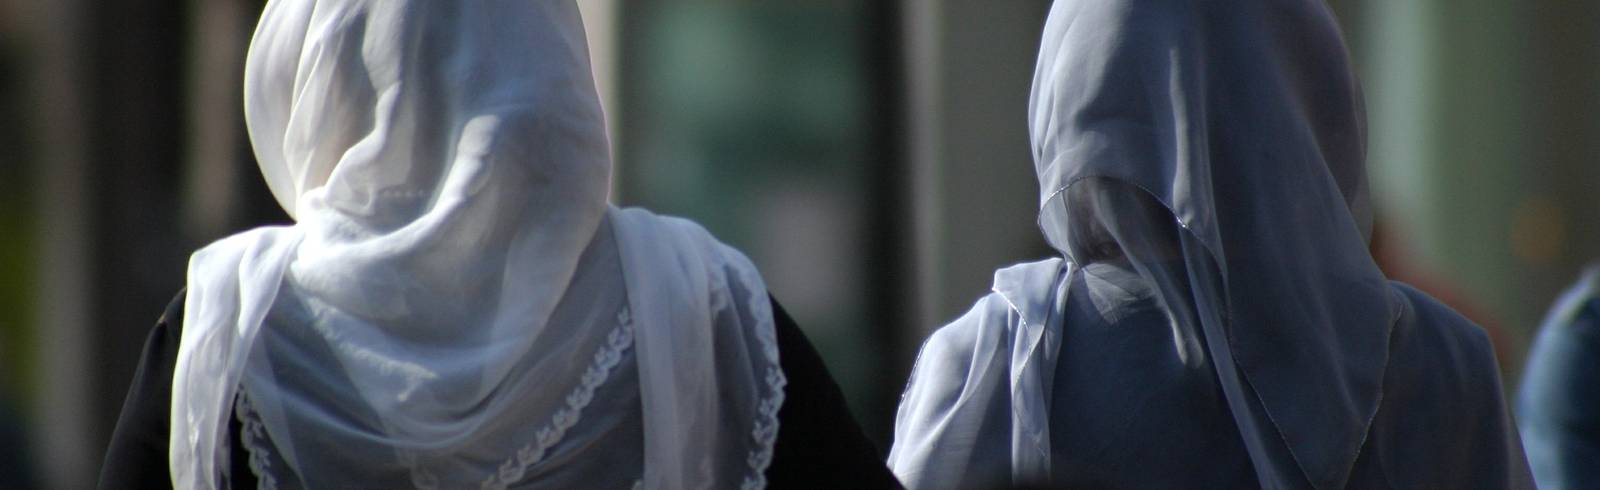 Aufregung um geplantes Kopftuchverbot für Kinder